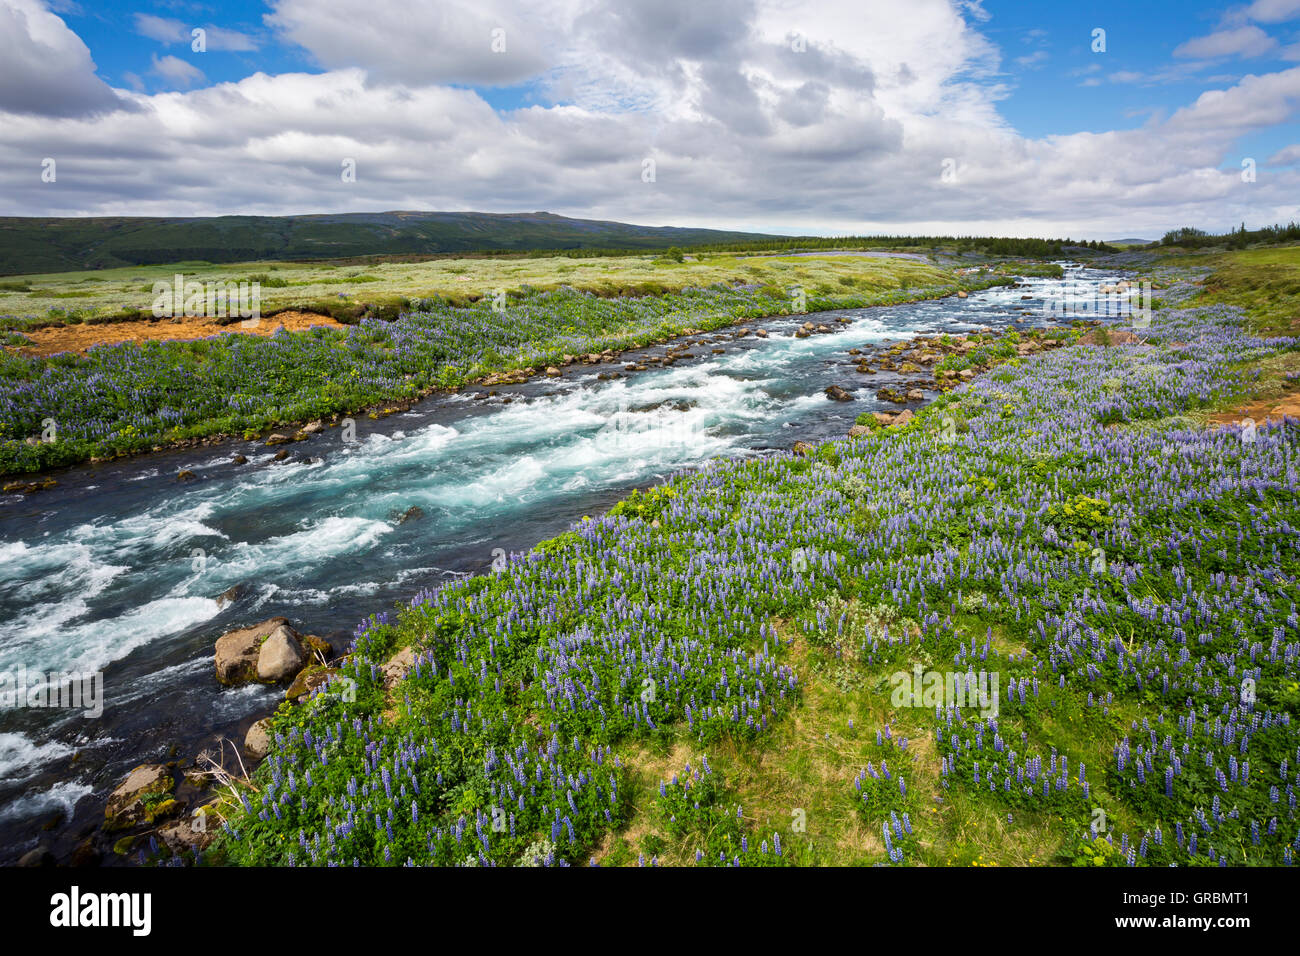 Los altramuces junto al río Tungufljot cerca Bryggja, Islandia, Suroeste de Islandia, Golden Circle Tour, Alaska, lupino púrpura nootka Foto de stock